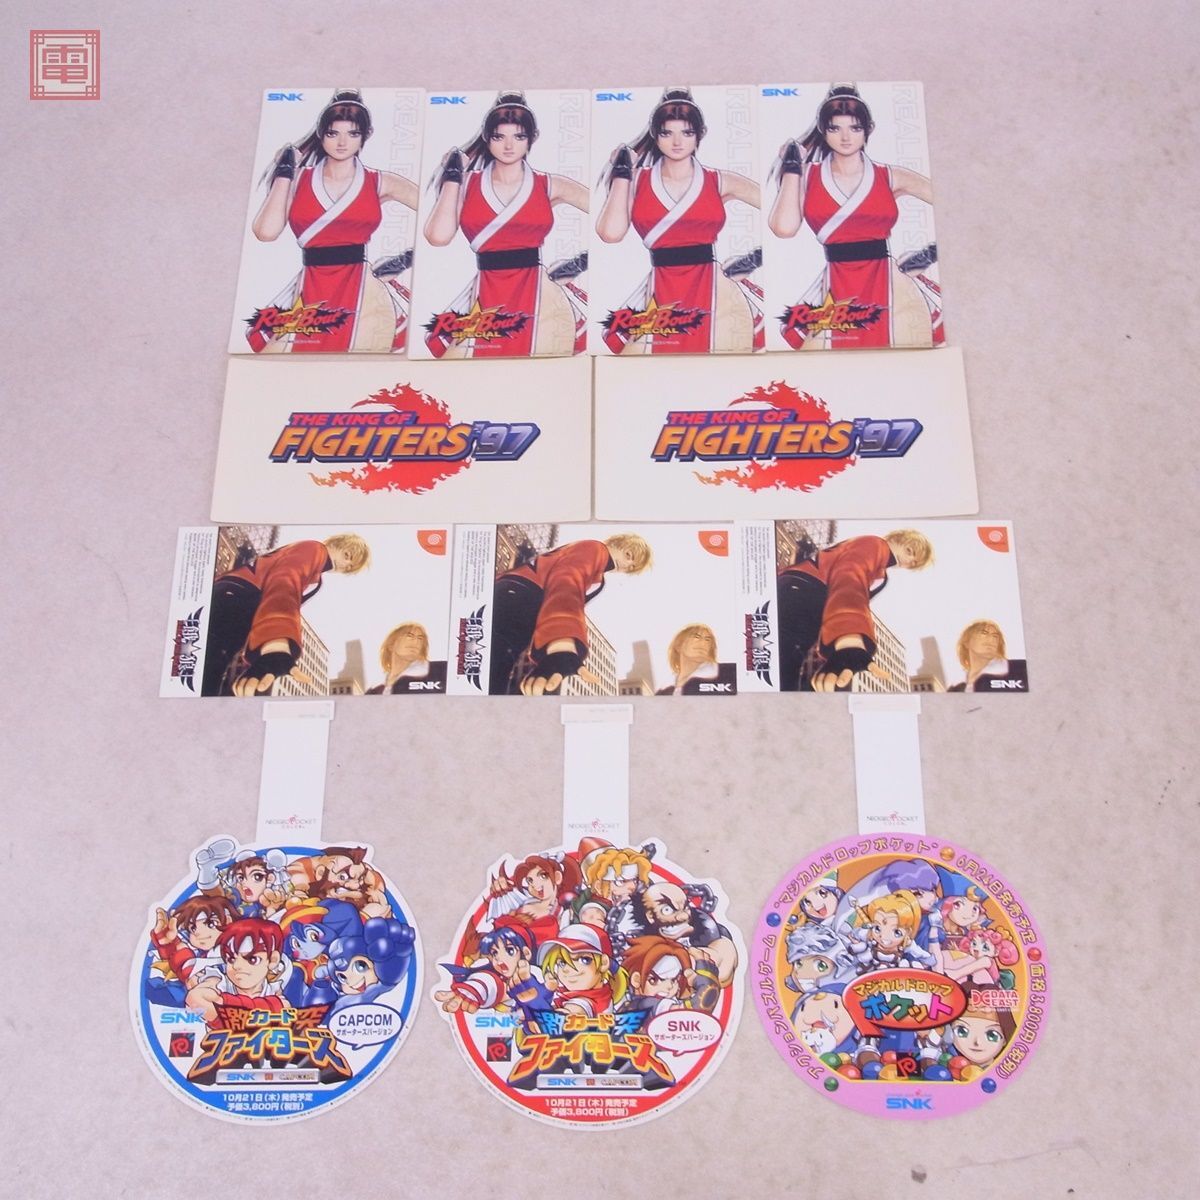  game goods .. goods SNK Neo geo pocket relation large amount set pop POP sticker Samurai Spirits KOF etc. NEOGEO[20